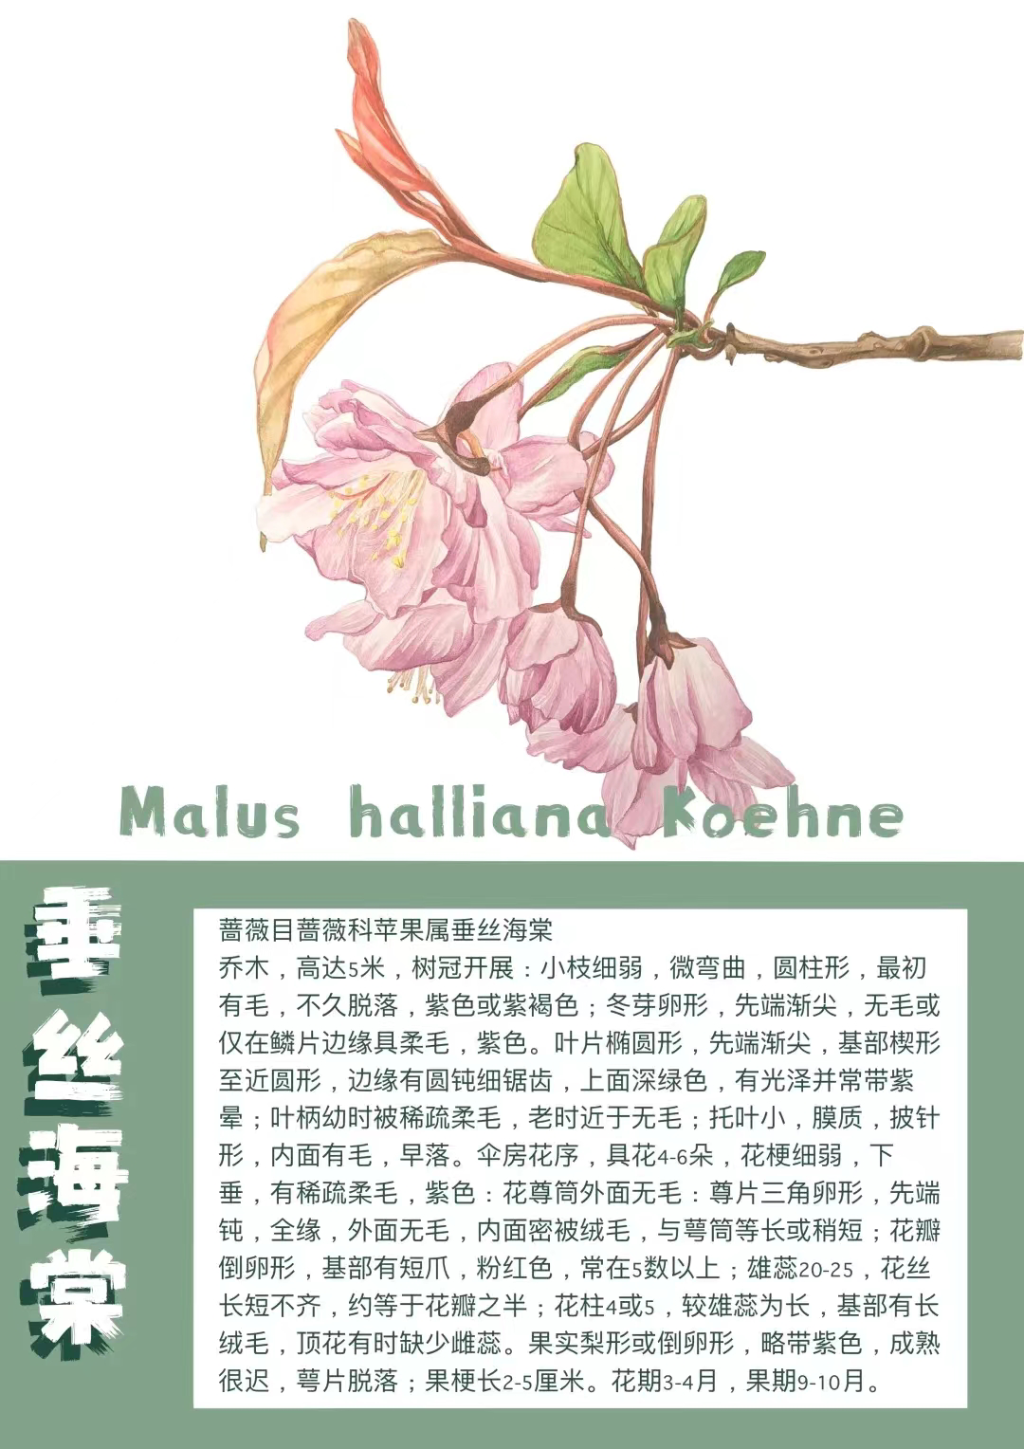 重庆师范大学发布校园花卉图鉴。受访单位供图